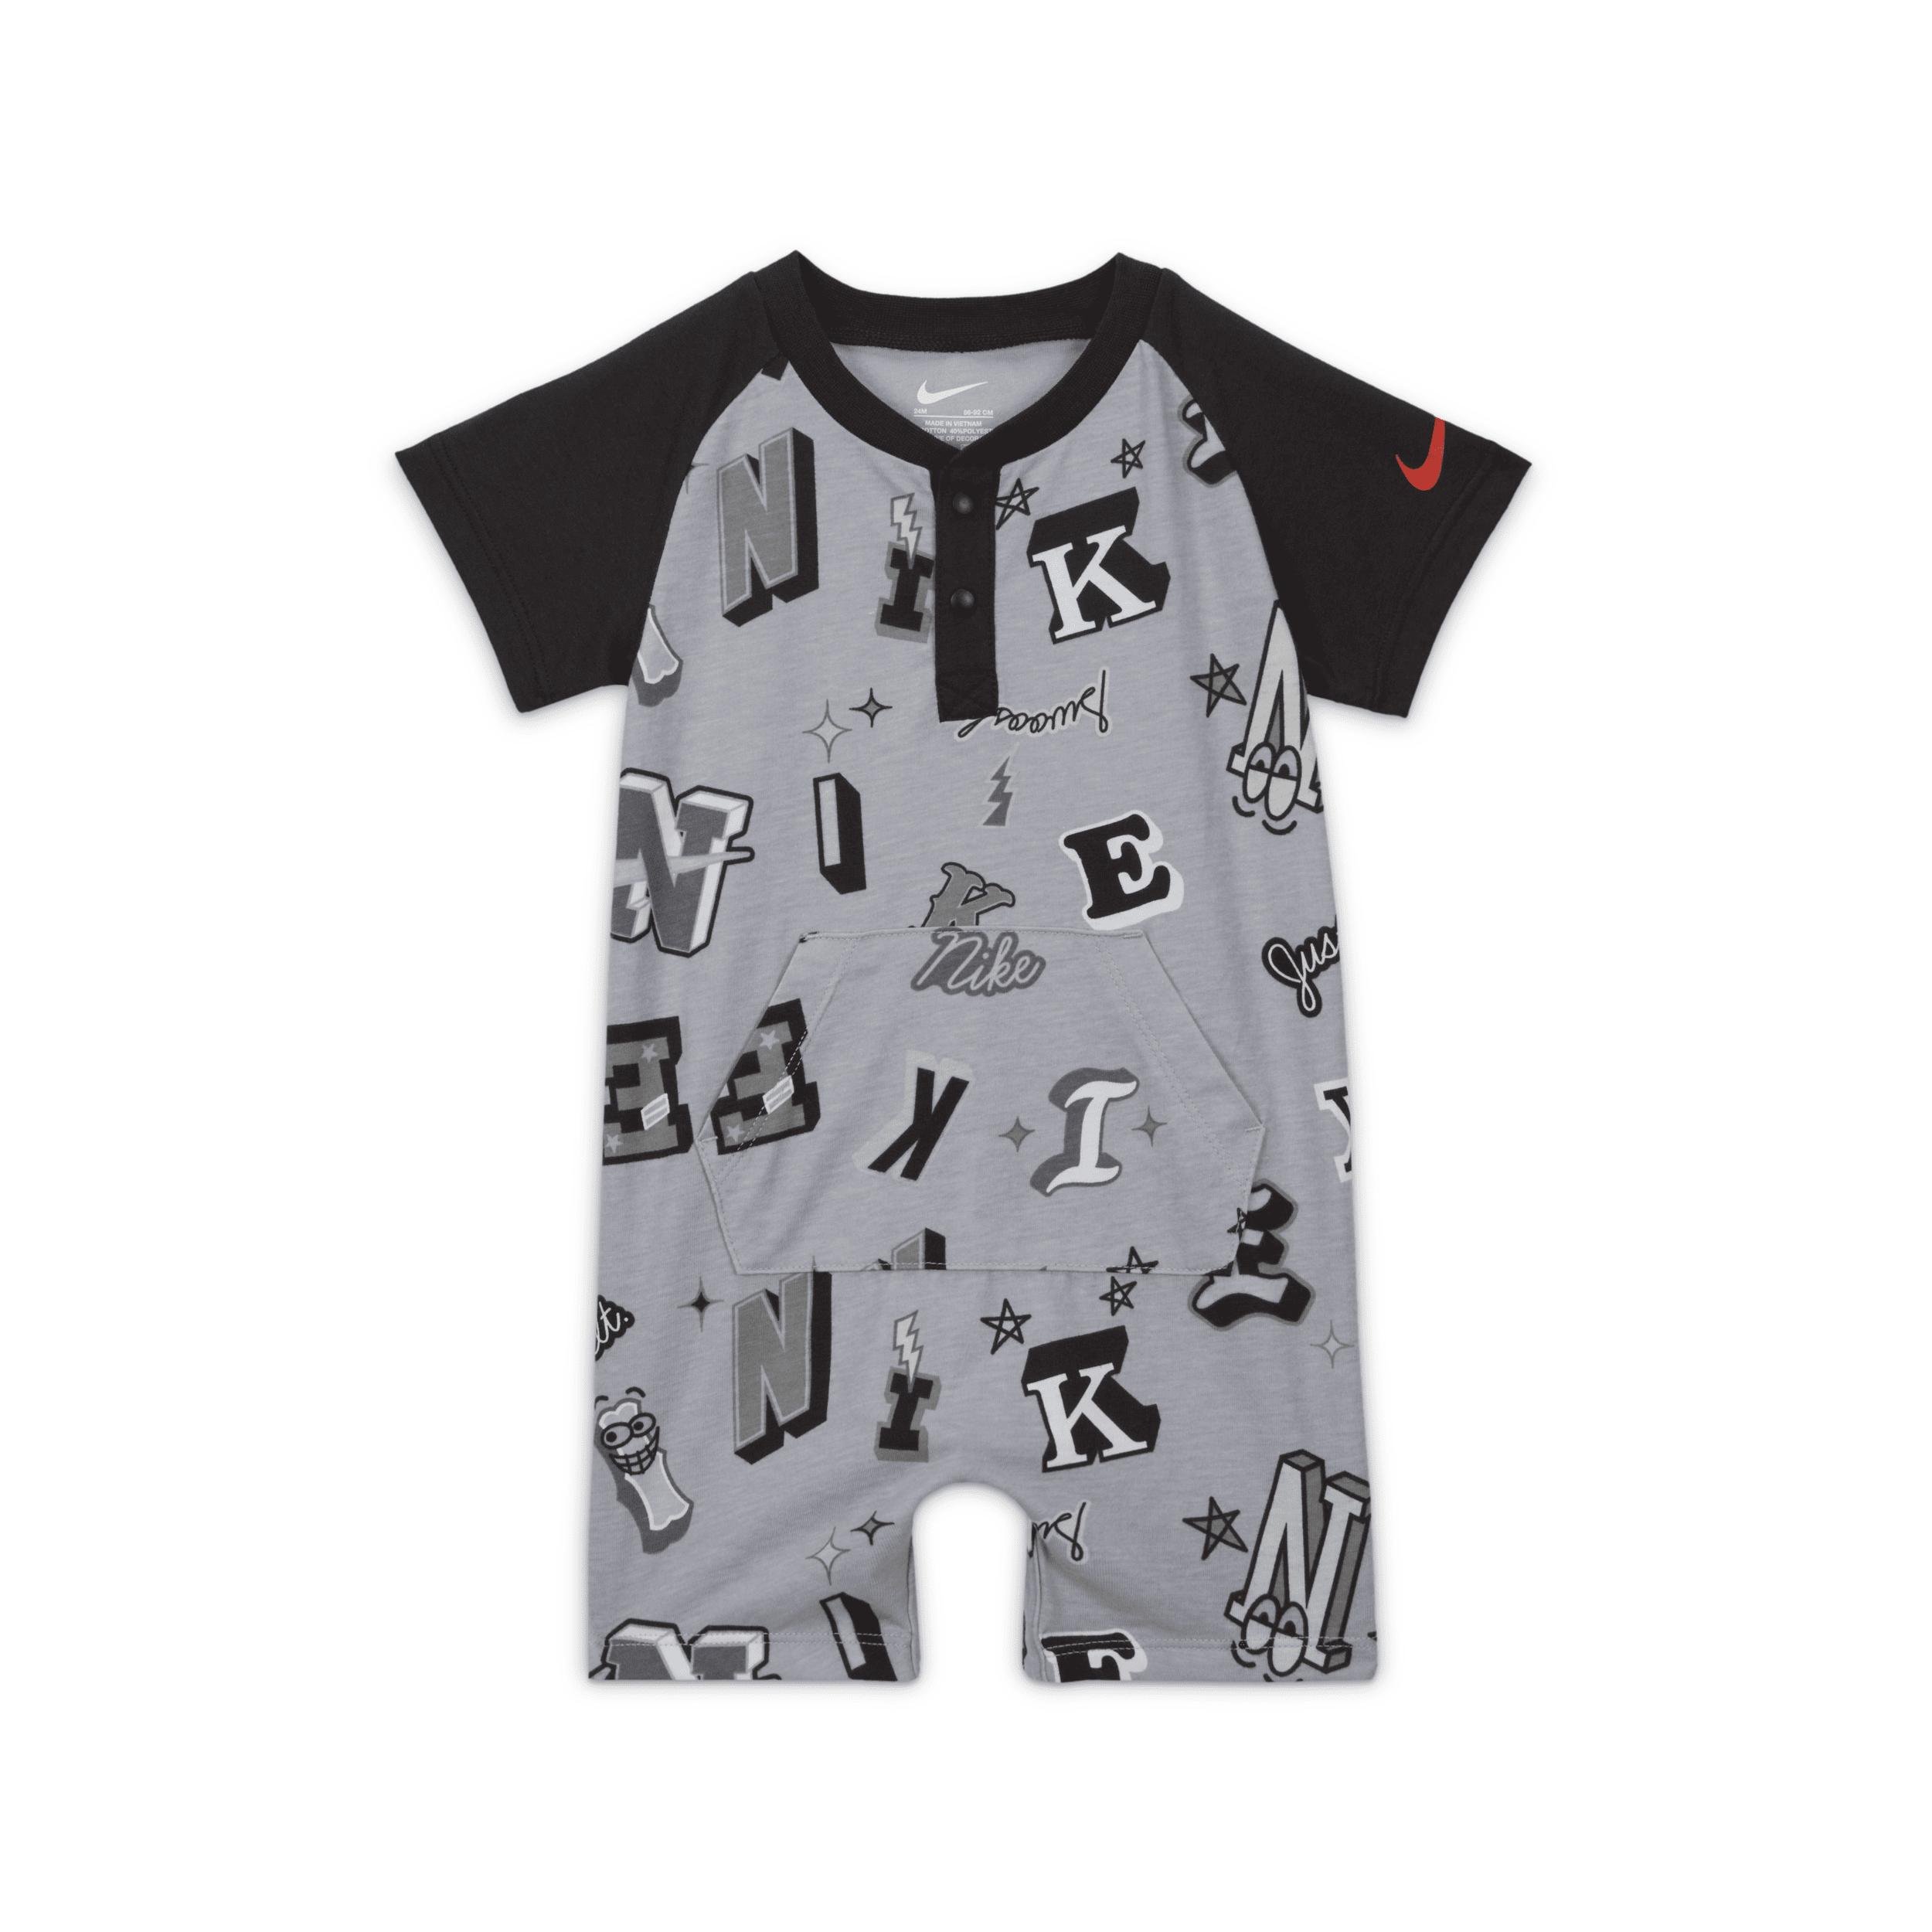 Nike Sportswear Next Gen Baby (0-9M) Tee Romper by NIKE